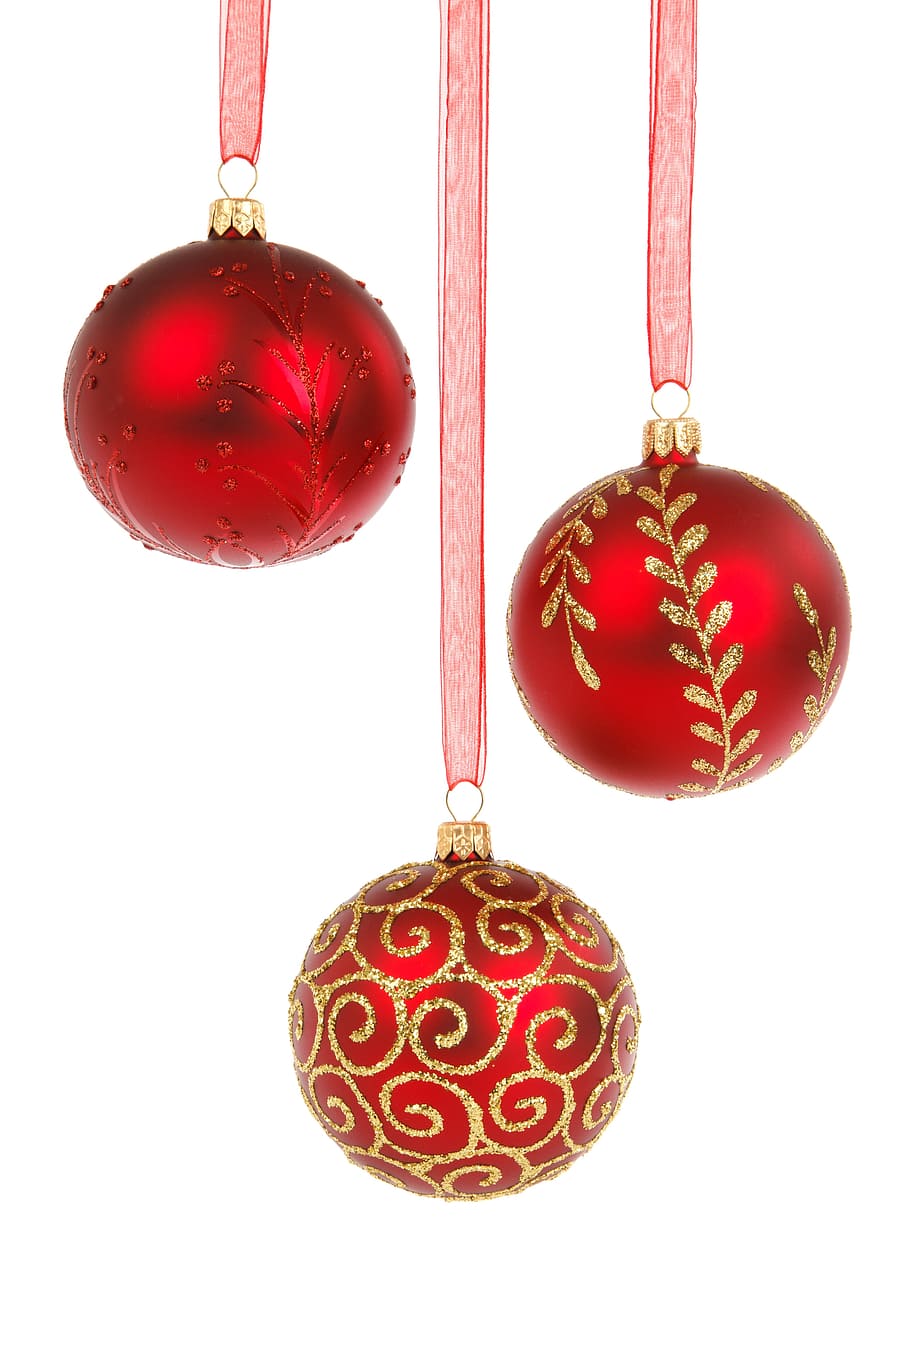 3 개의 빨간 지팡이, 공, 불알, 값싼 물건, 축하, 크리스마스, 12 월, 장식, 장식적인, 유리